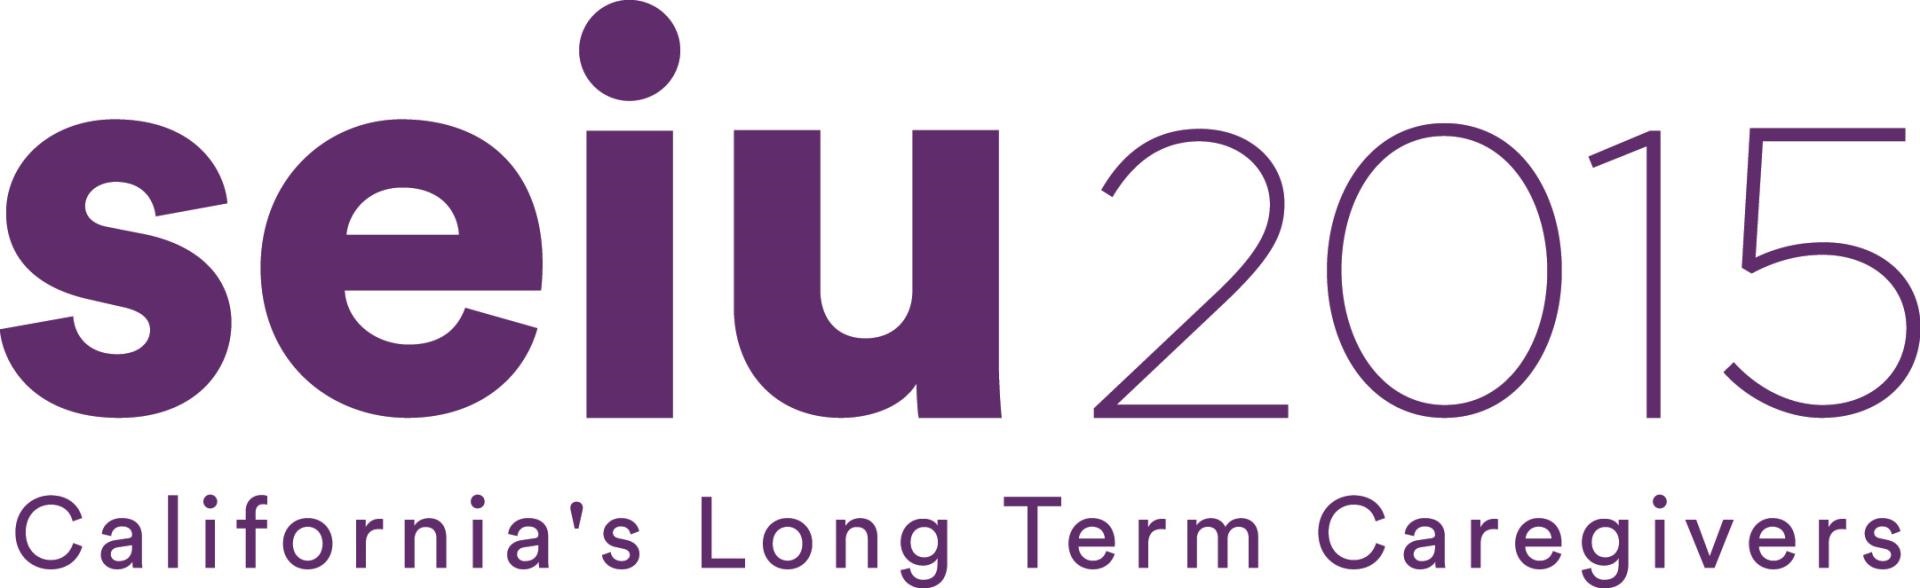 seiu-2015-Californias-long-term-caregivers-logo.jpg